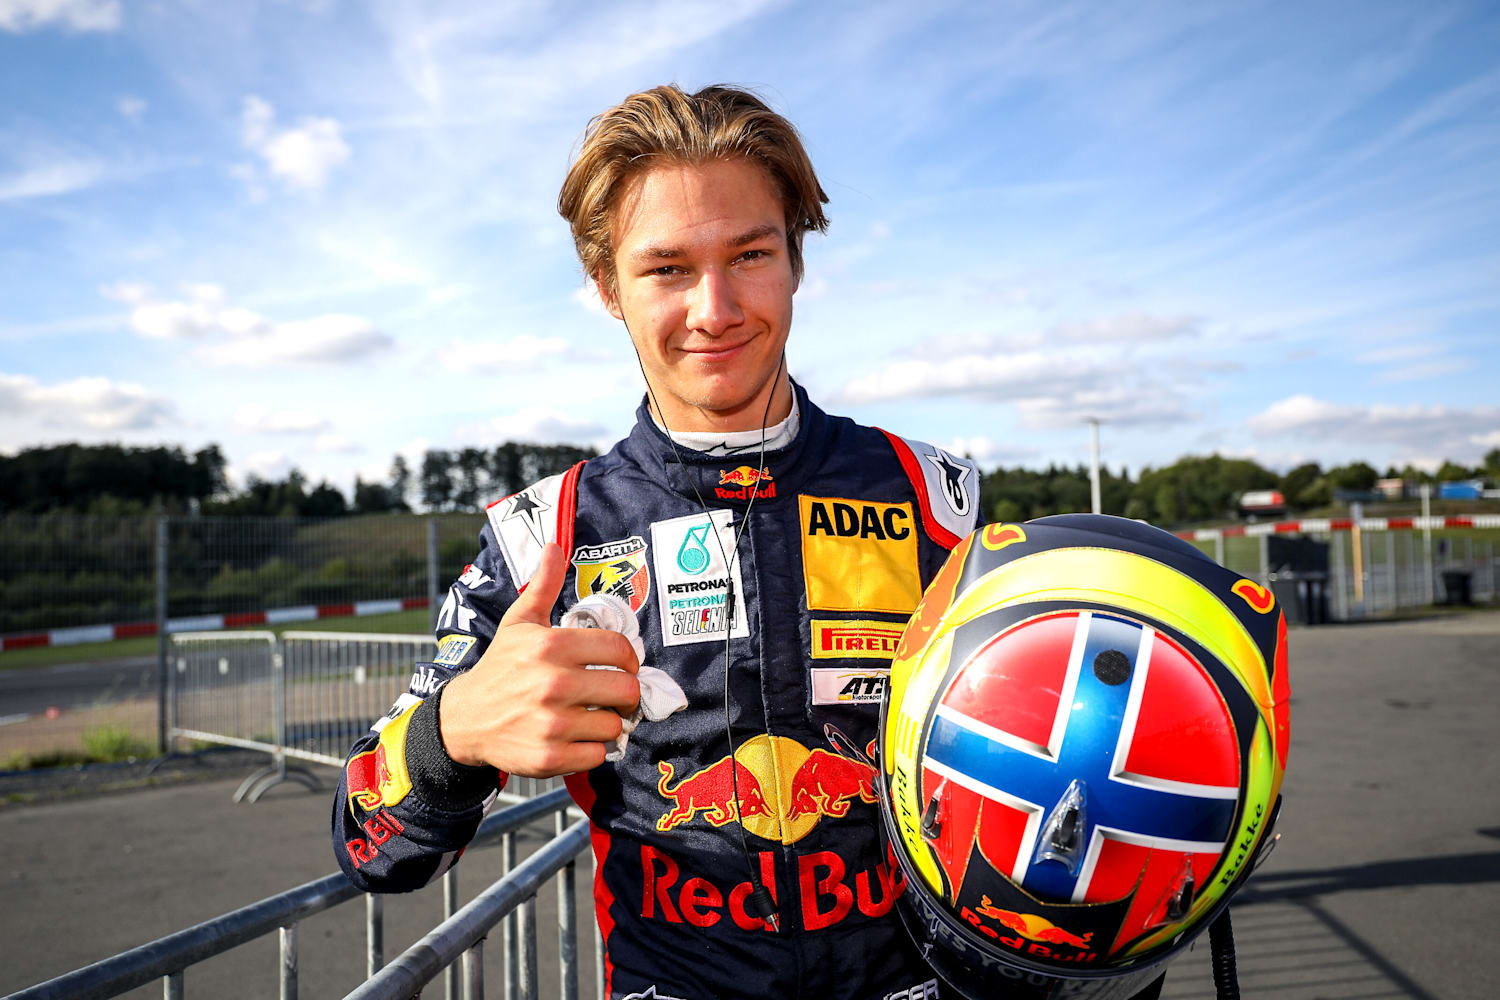 Dennis Hauger: Motorsport - Red Bull Athlete Profile